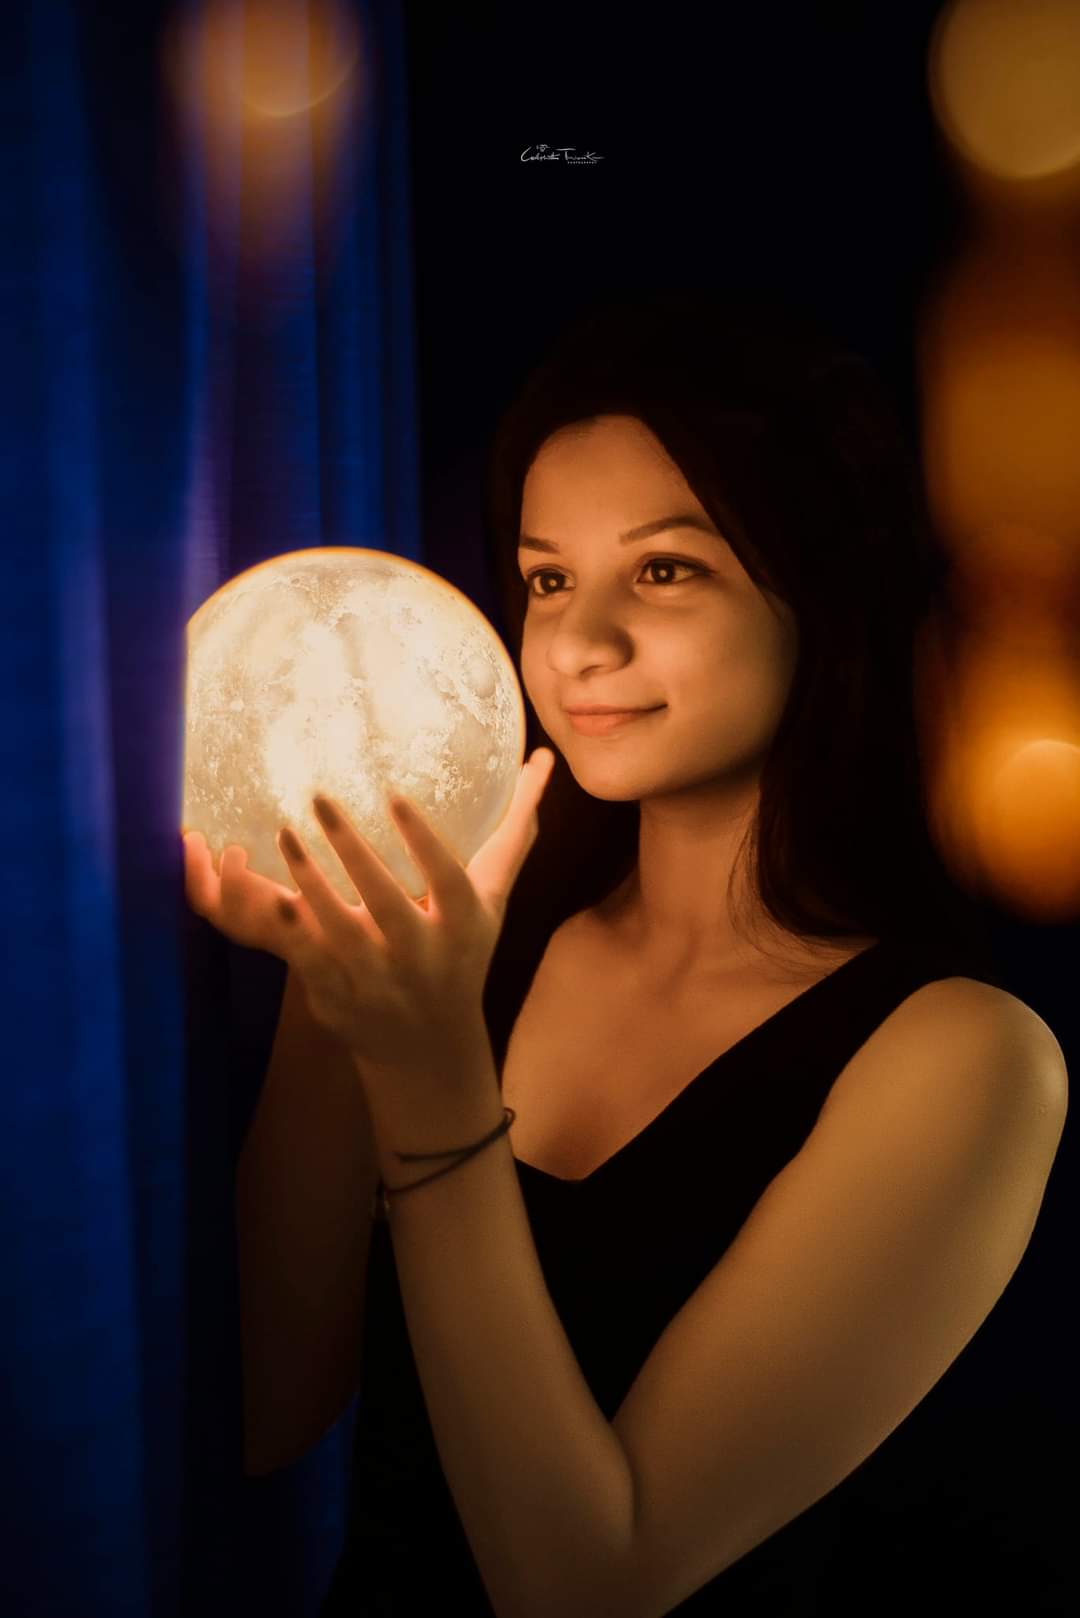 The Moon Light girl